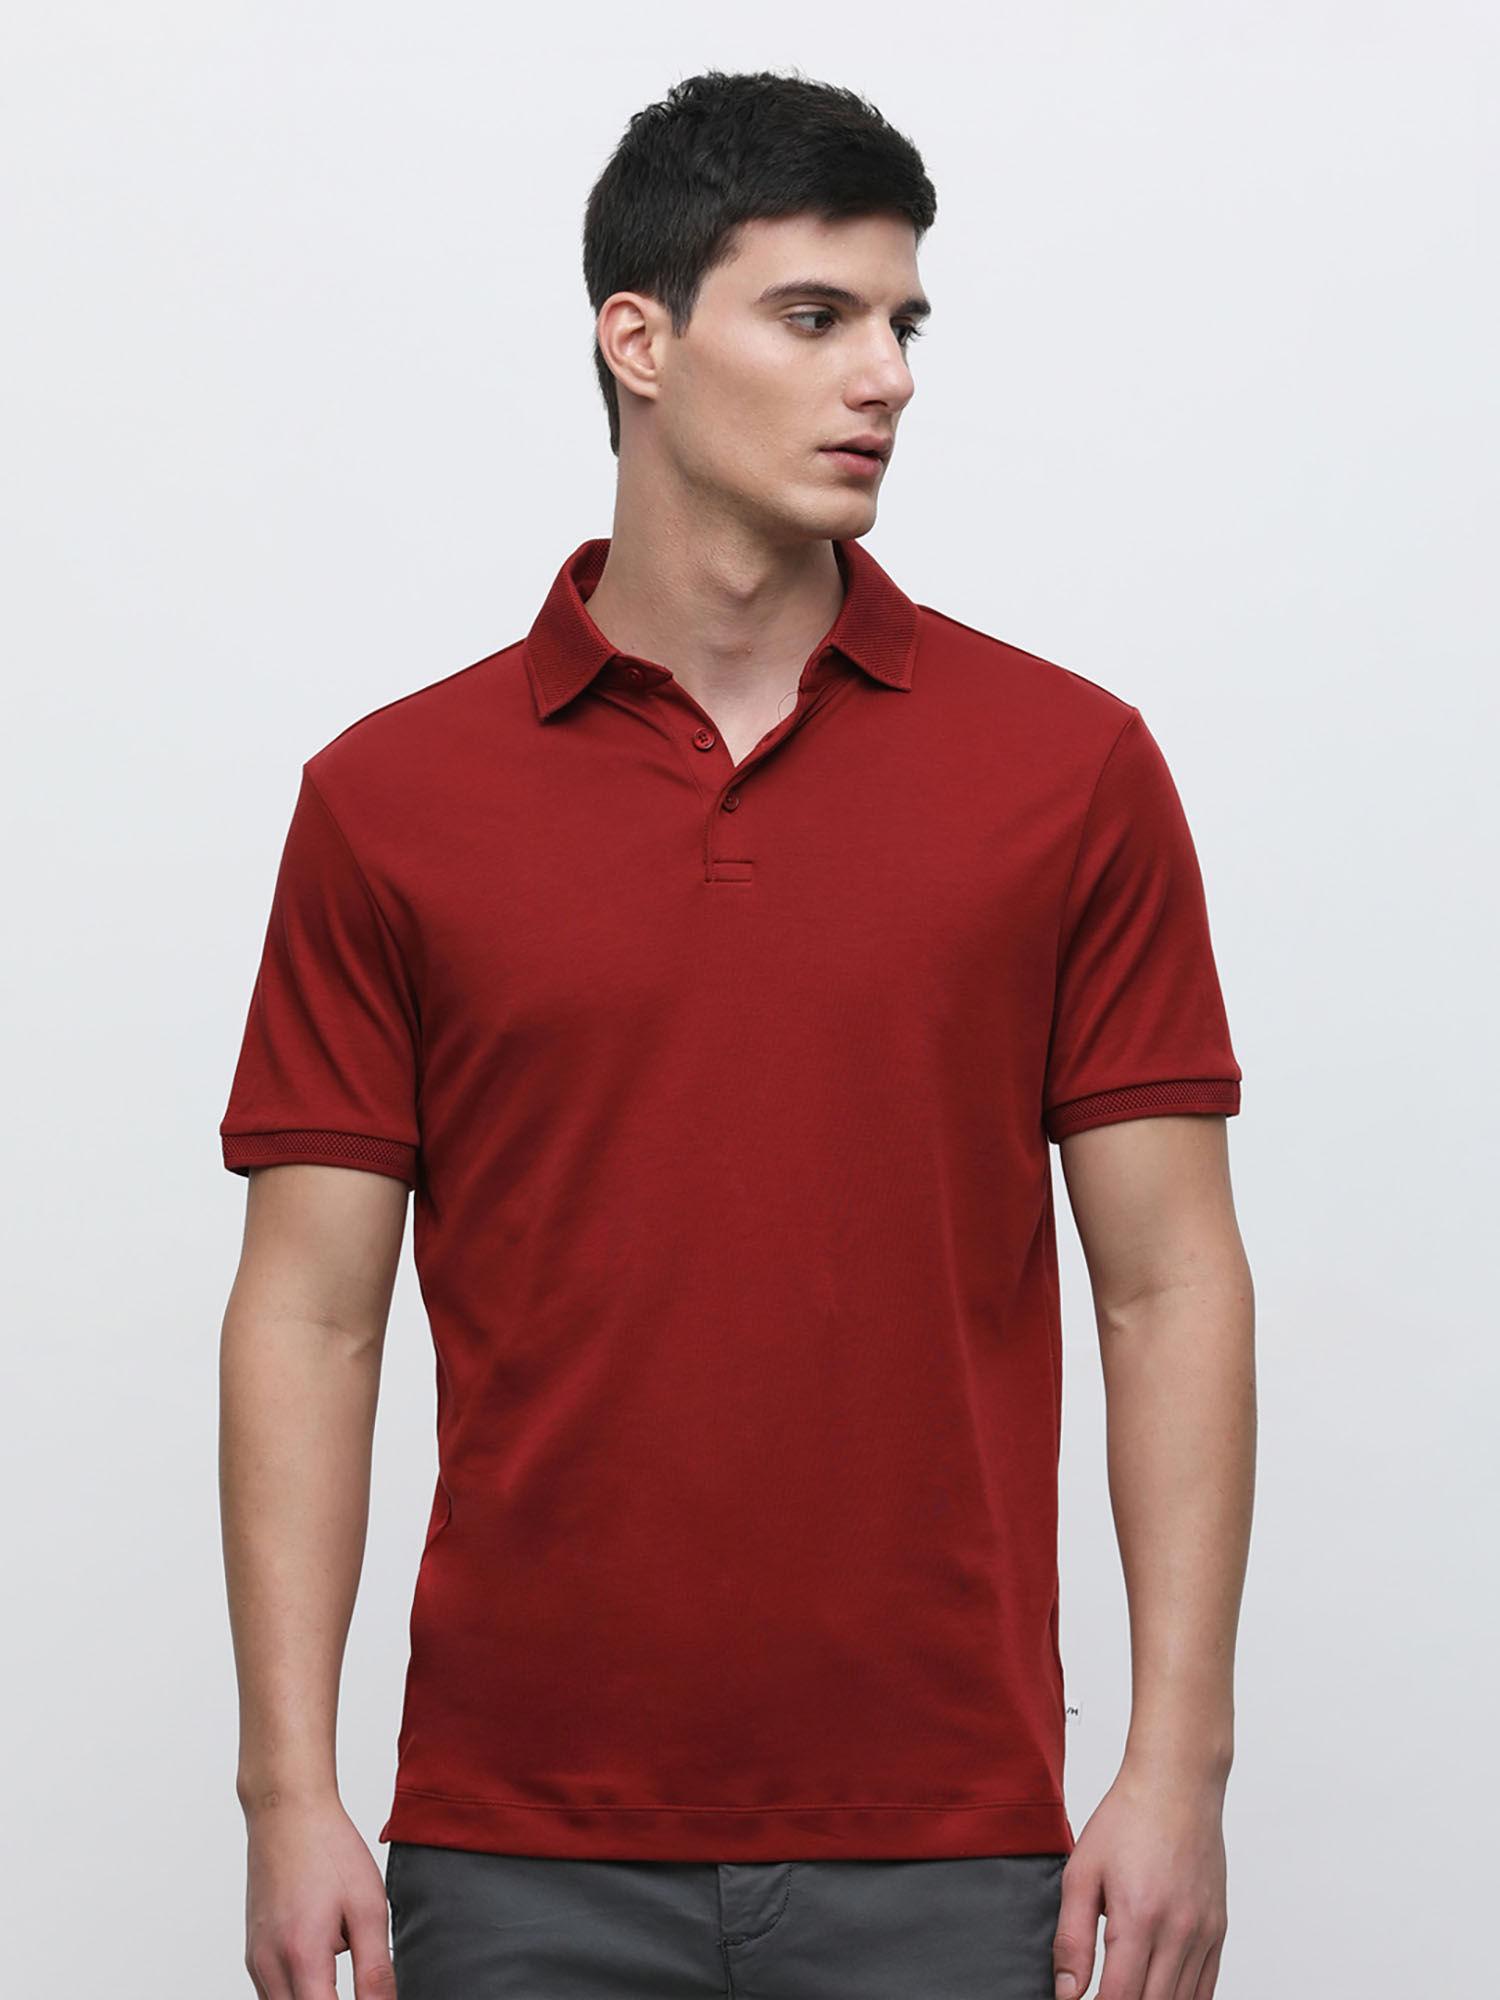 maroon polo neck t-shirt